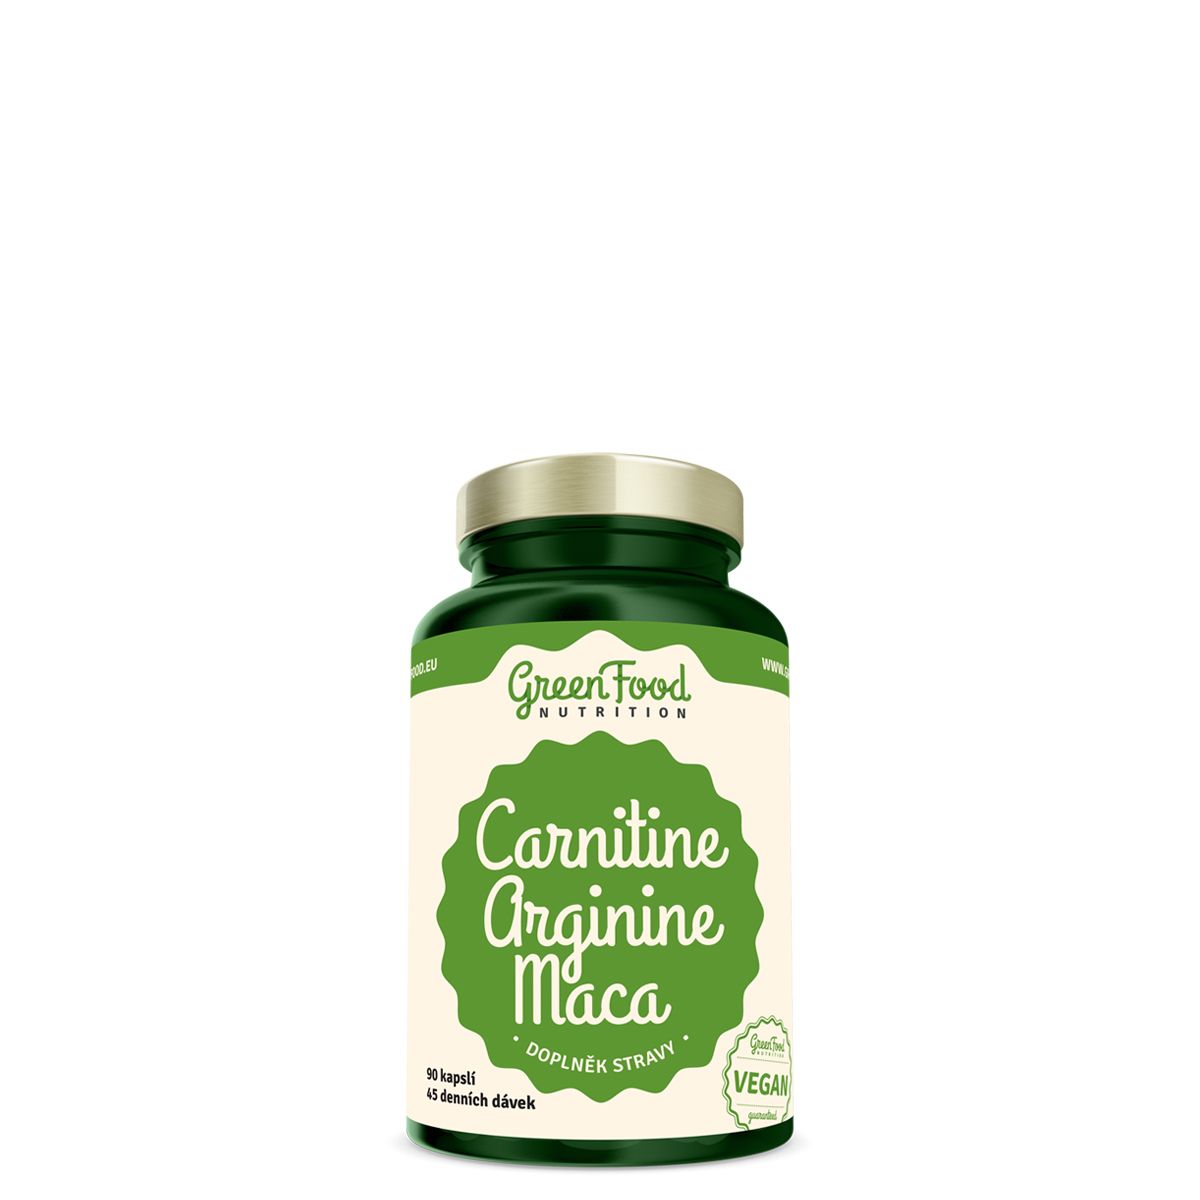 Karnitin-arginin-maca formula, GreenFood Nutrition Carnitine + Arginine + Maca, 90 kapszula